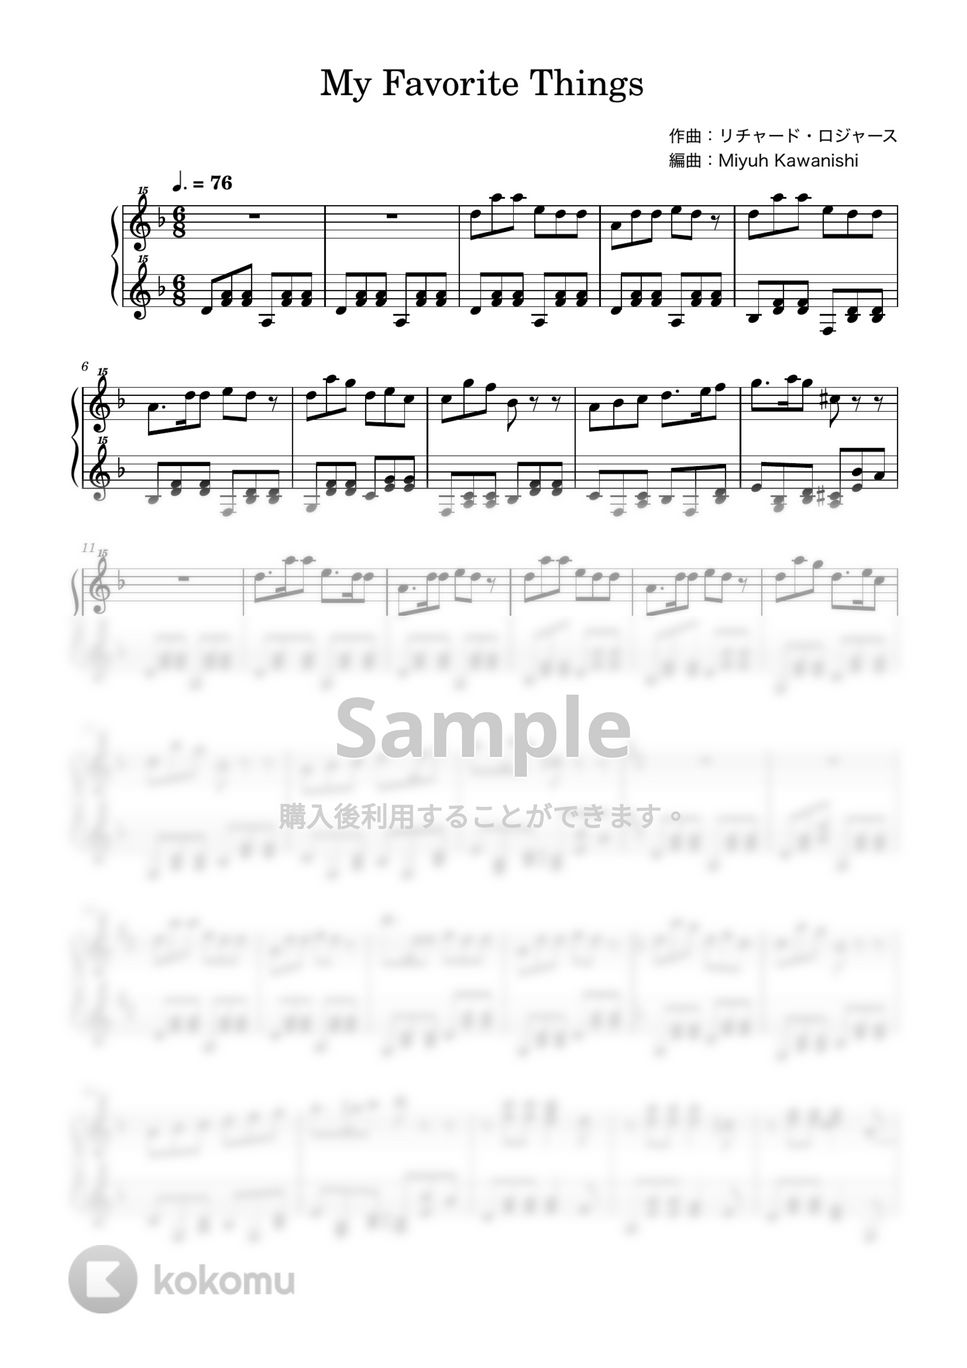 リチャード・ロジャース - 私のお気に入り (トイピアノ / 32鍵盤 / ミュージカル / サウンドオブミュージック) by 川西三裕